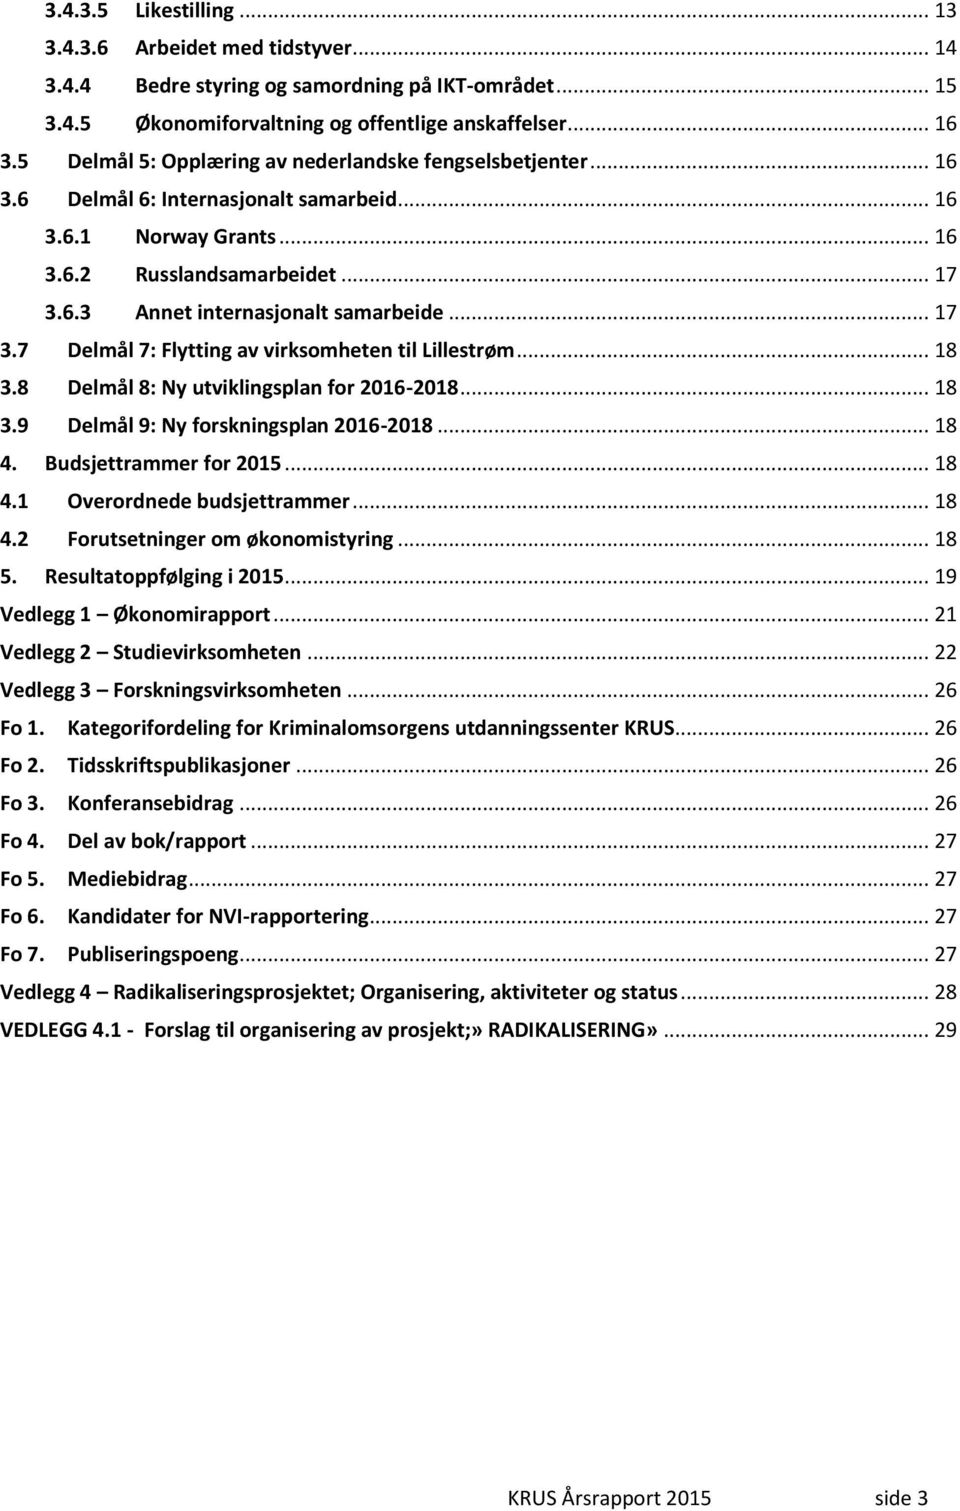 .. 17 3.7 Delmål 7: Flytting av virksomheten til Lillestrøm... 18 3.8 Delmål 8: Ny utviklingsplan for 2016-2018... 18 3.9 Delmål 9: Ny forskningsplan 2016-2018... 18 4. Budsjettrammer for 2015... 18 4.1 Overordnede budsjettrammer.